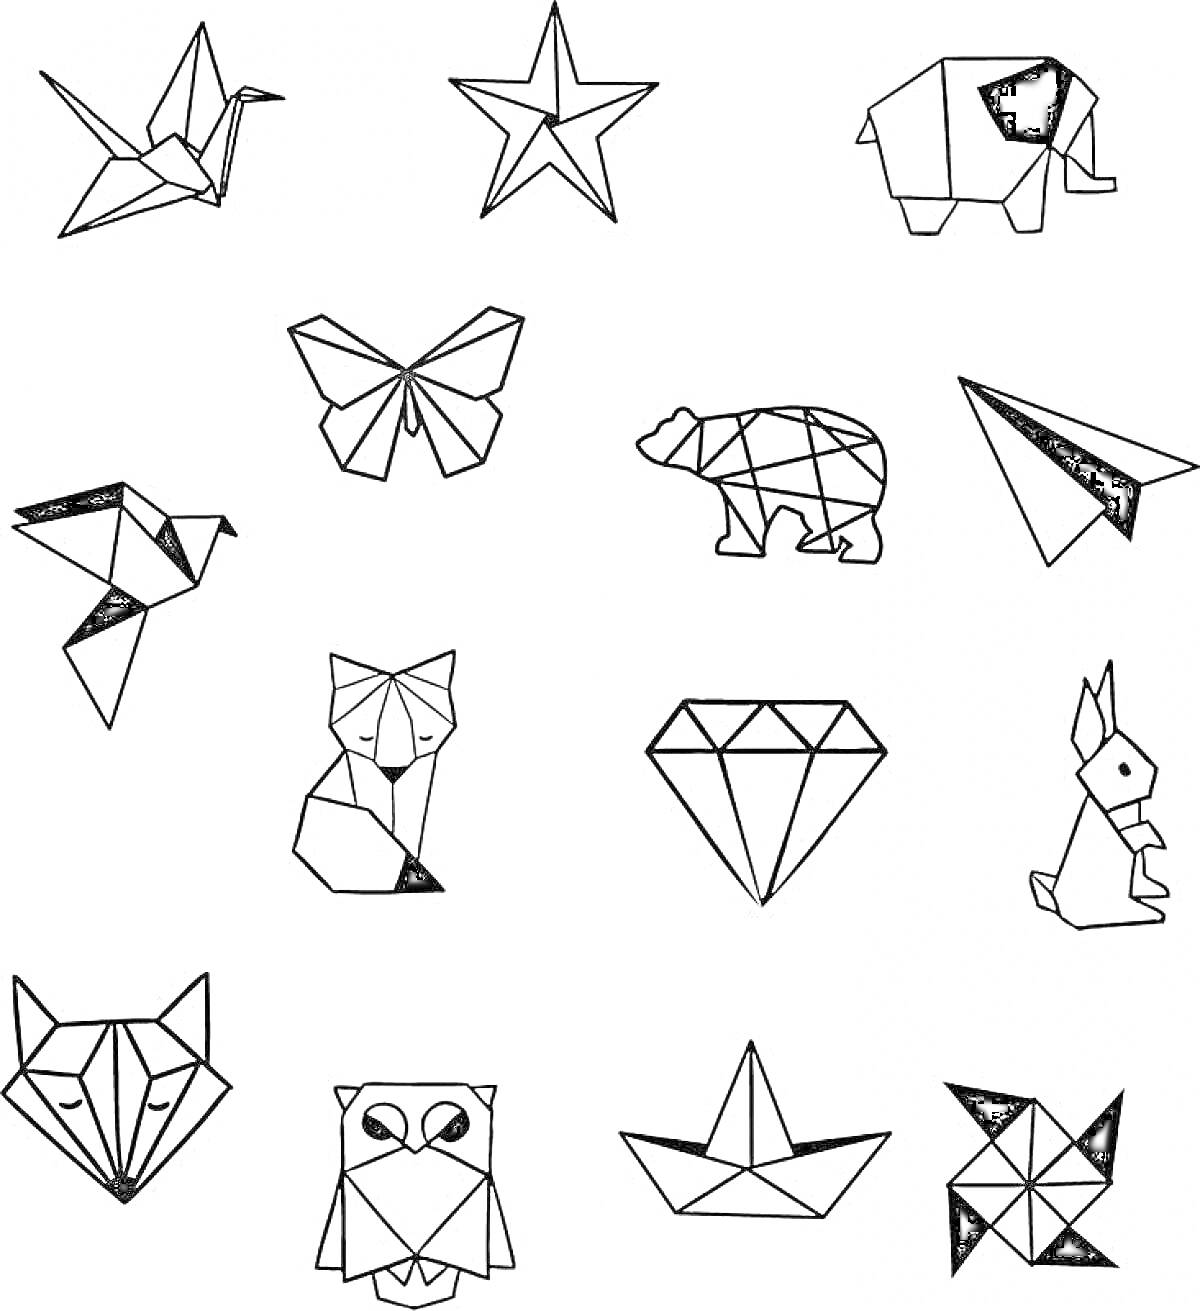 Замысловатые оригами фигуры - журавль, звезда, слон, бабочка, медведь, бумажный самолетик, птица, лиса, драгоценный камень, кролик, волк, сова, кораблик, мельница